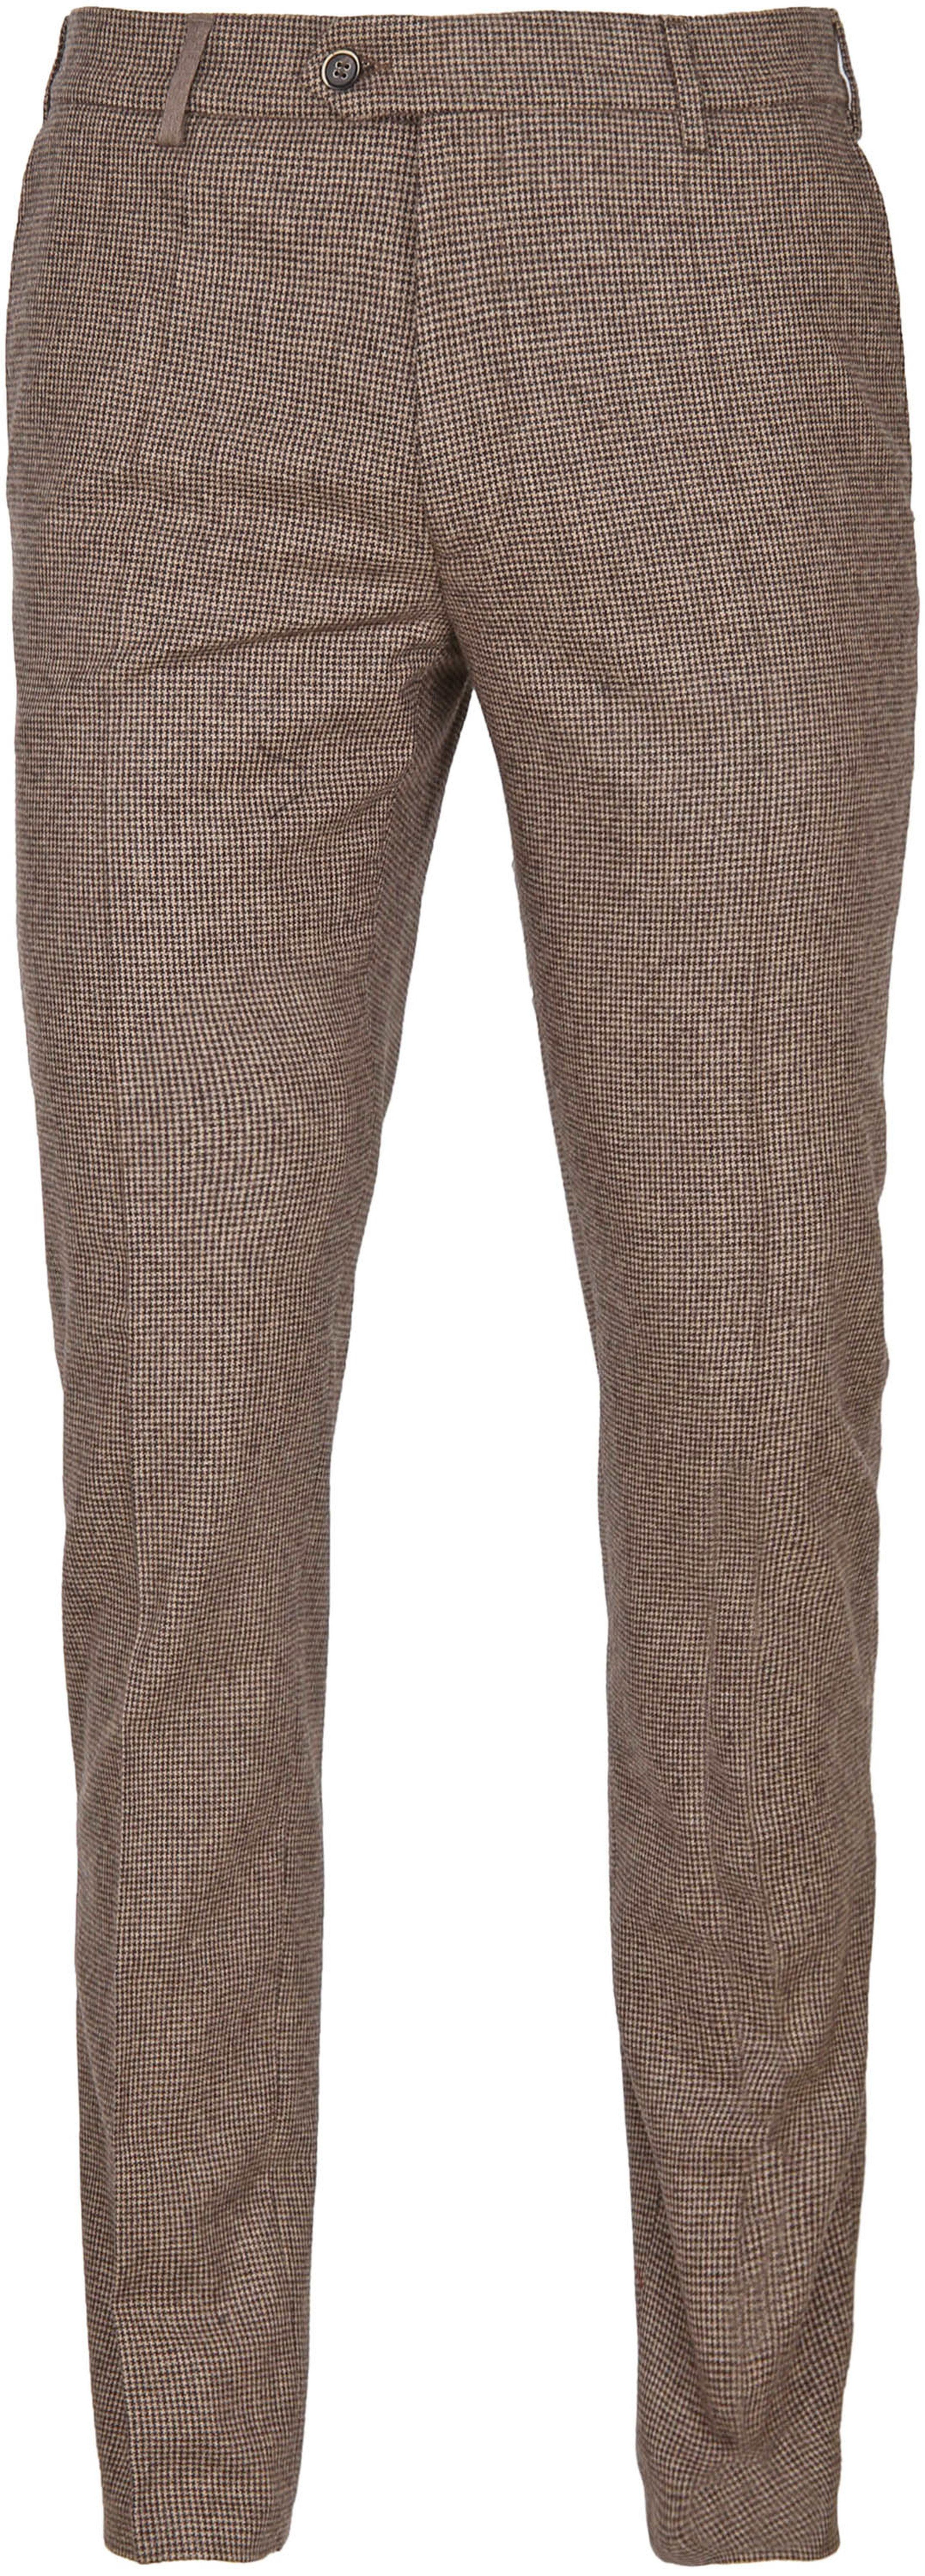 Suitable Pantalon Milano Brown size W 34